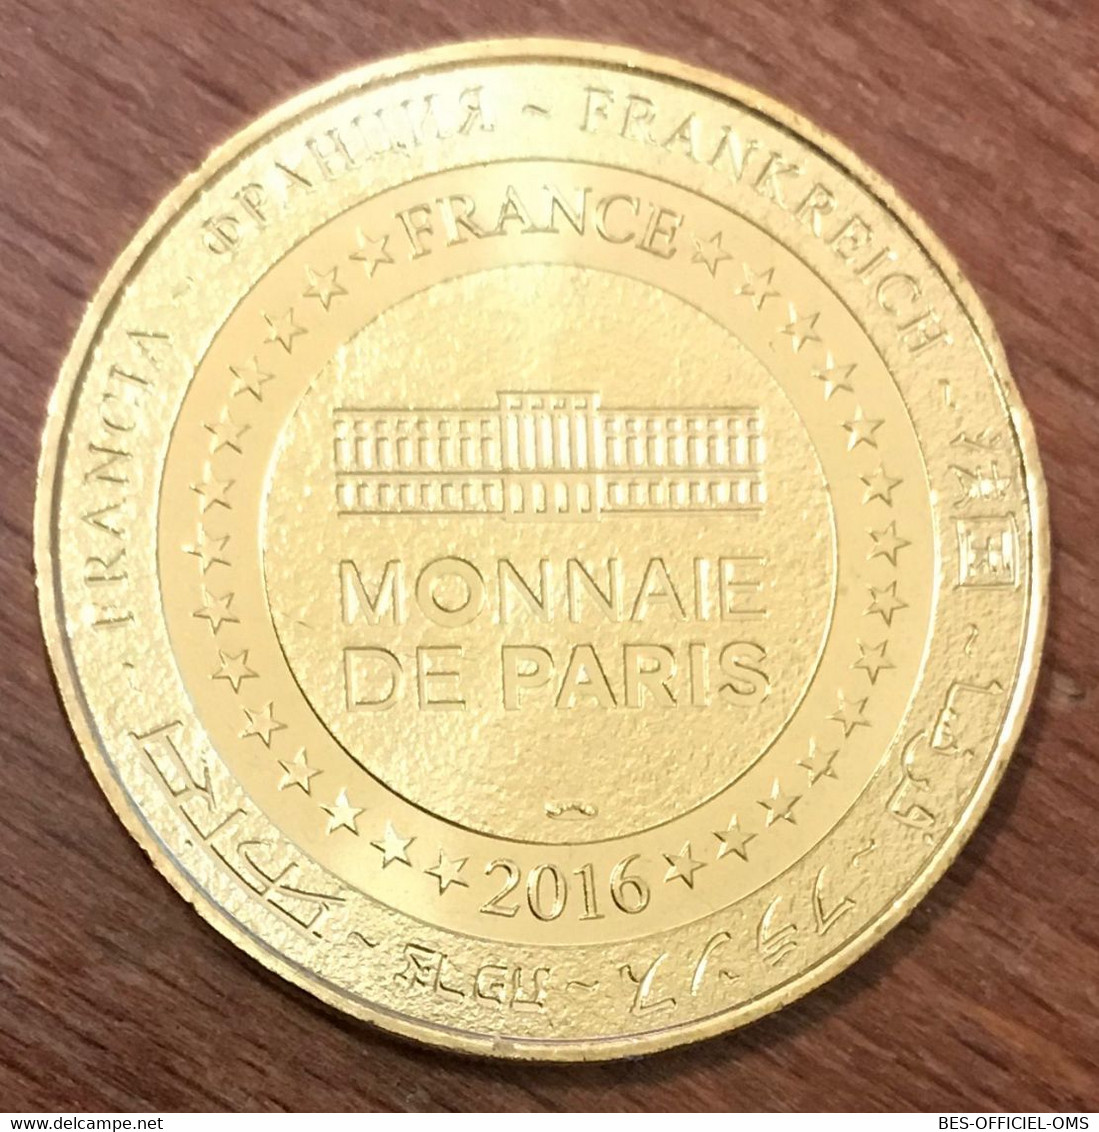 21 MONTBARD PARC BUFFON DE MONTBARD MDP 2016 MÉDAILLE SOUVENIR MONNAIE DE PARIS JETON TOURISTIQUE MEDALS COINS TOKENS - 2016